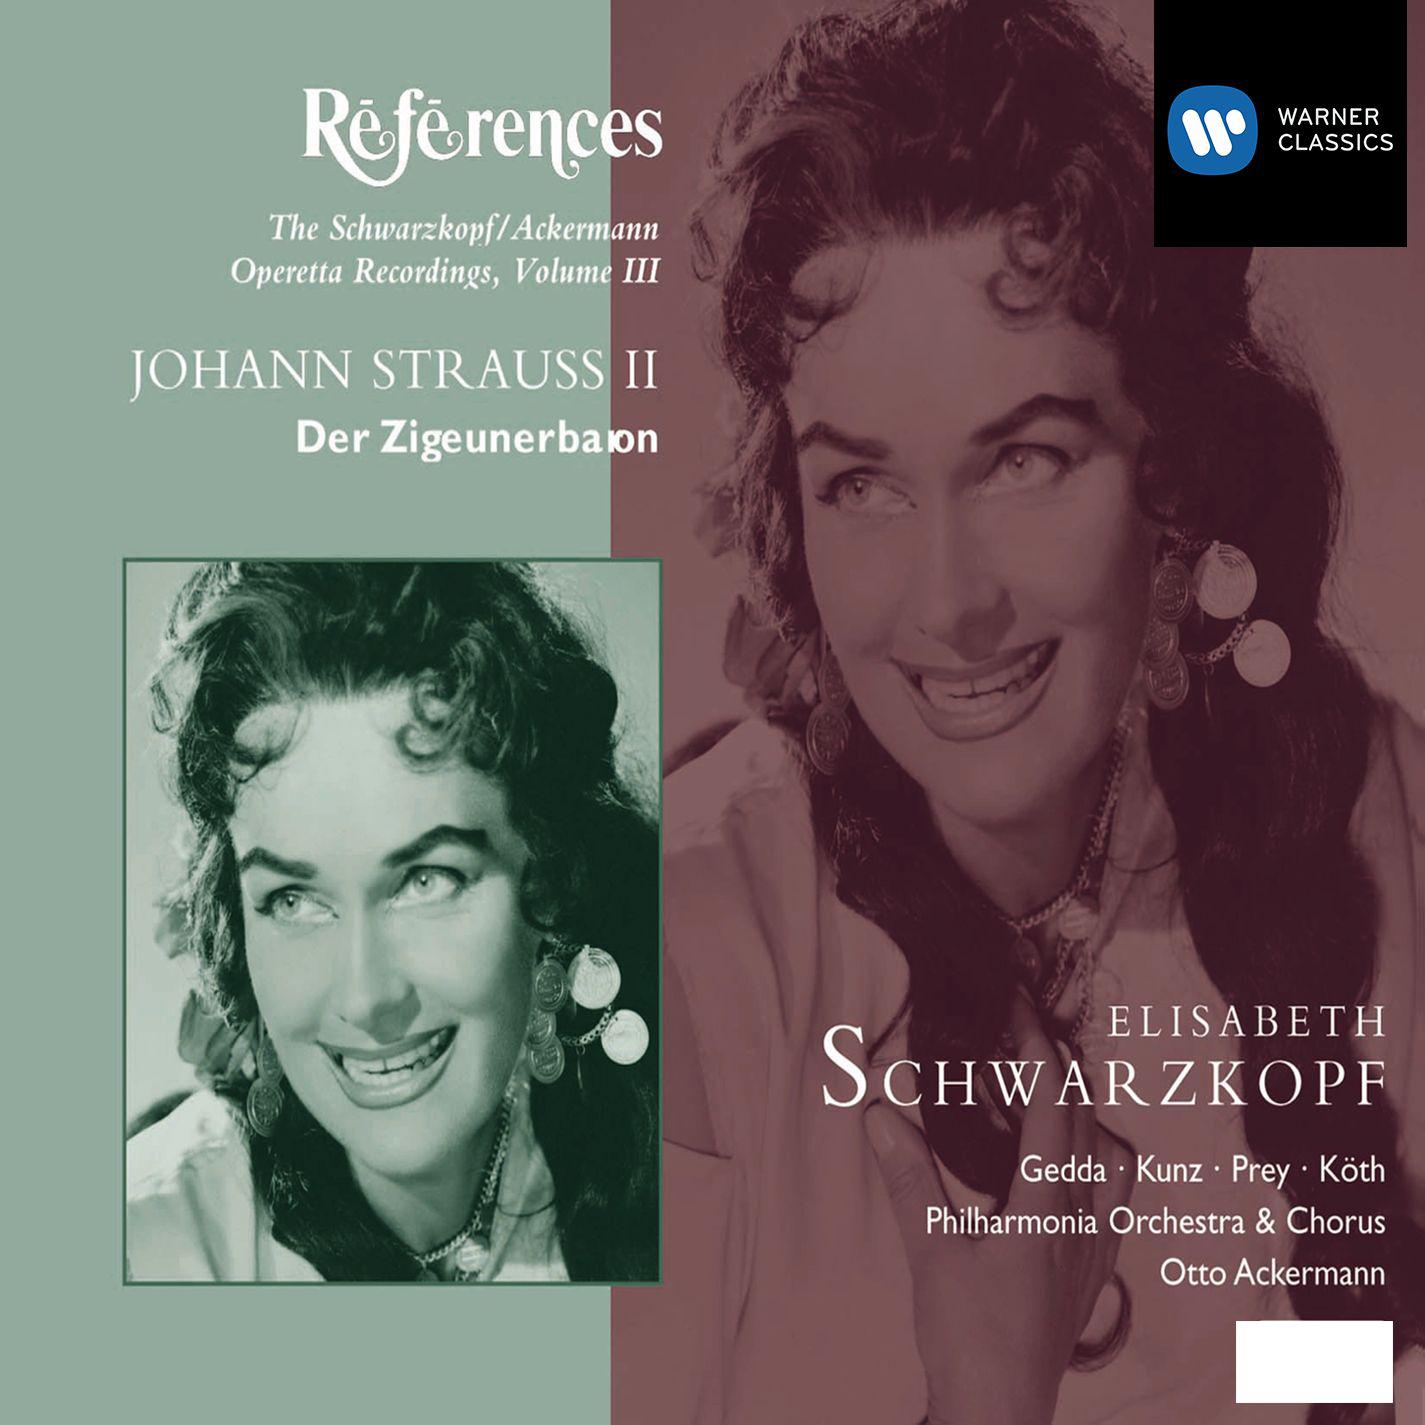 Elisabeth Schwarzkopf - Der Zigeunerbaron (2001 Remastered Version), Act I:Ja, das Schreiben und Lesen (Zsupán)